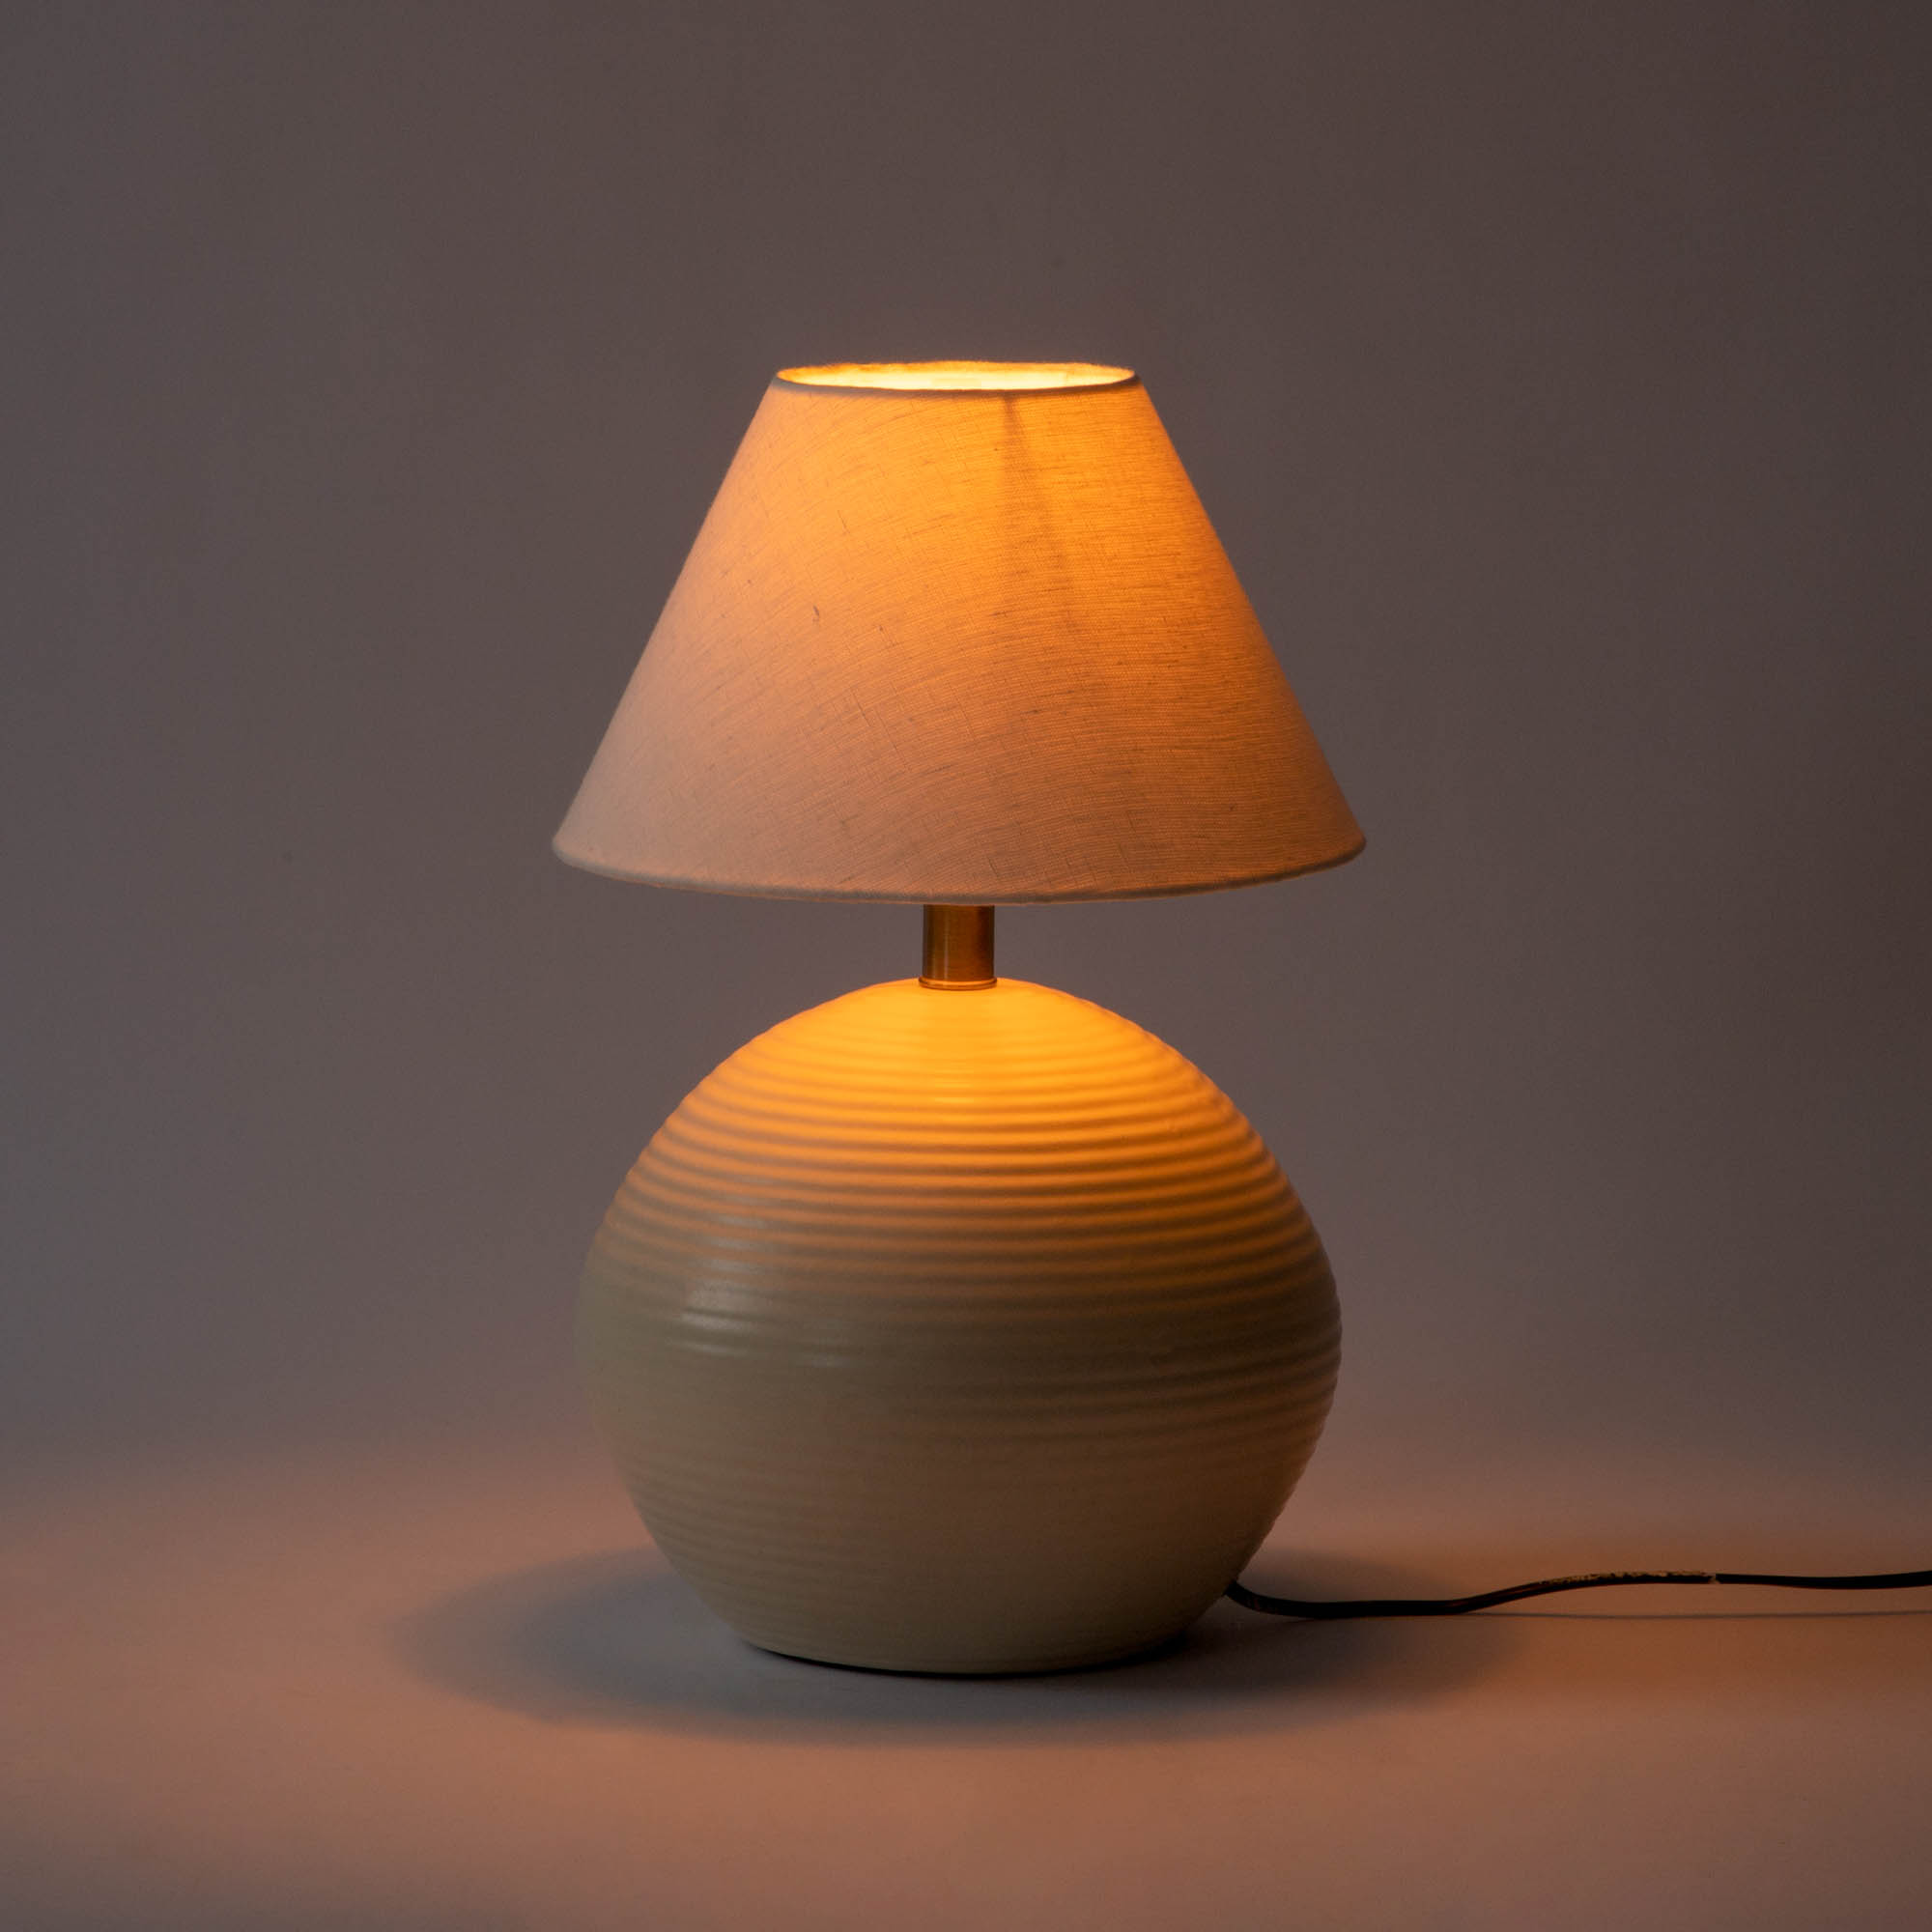 Alexandria Ceramic Table Lamp